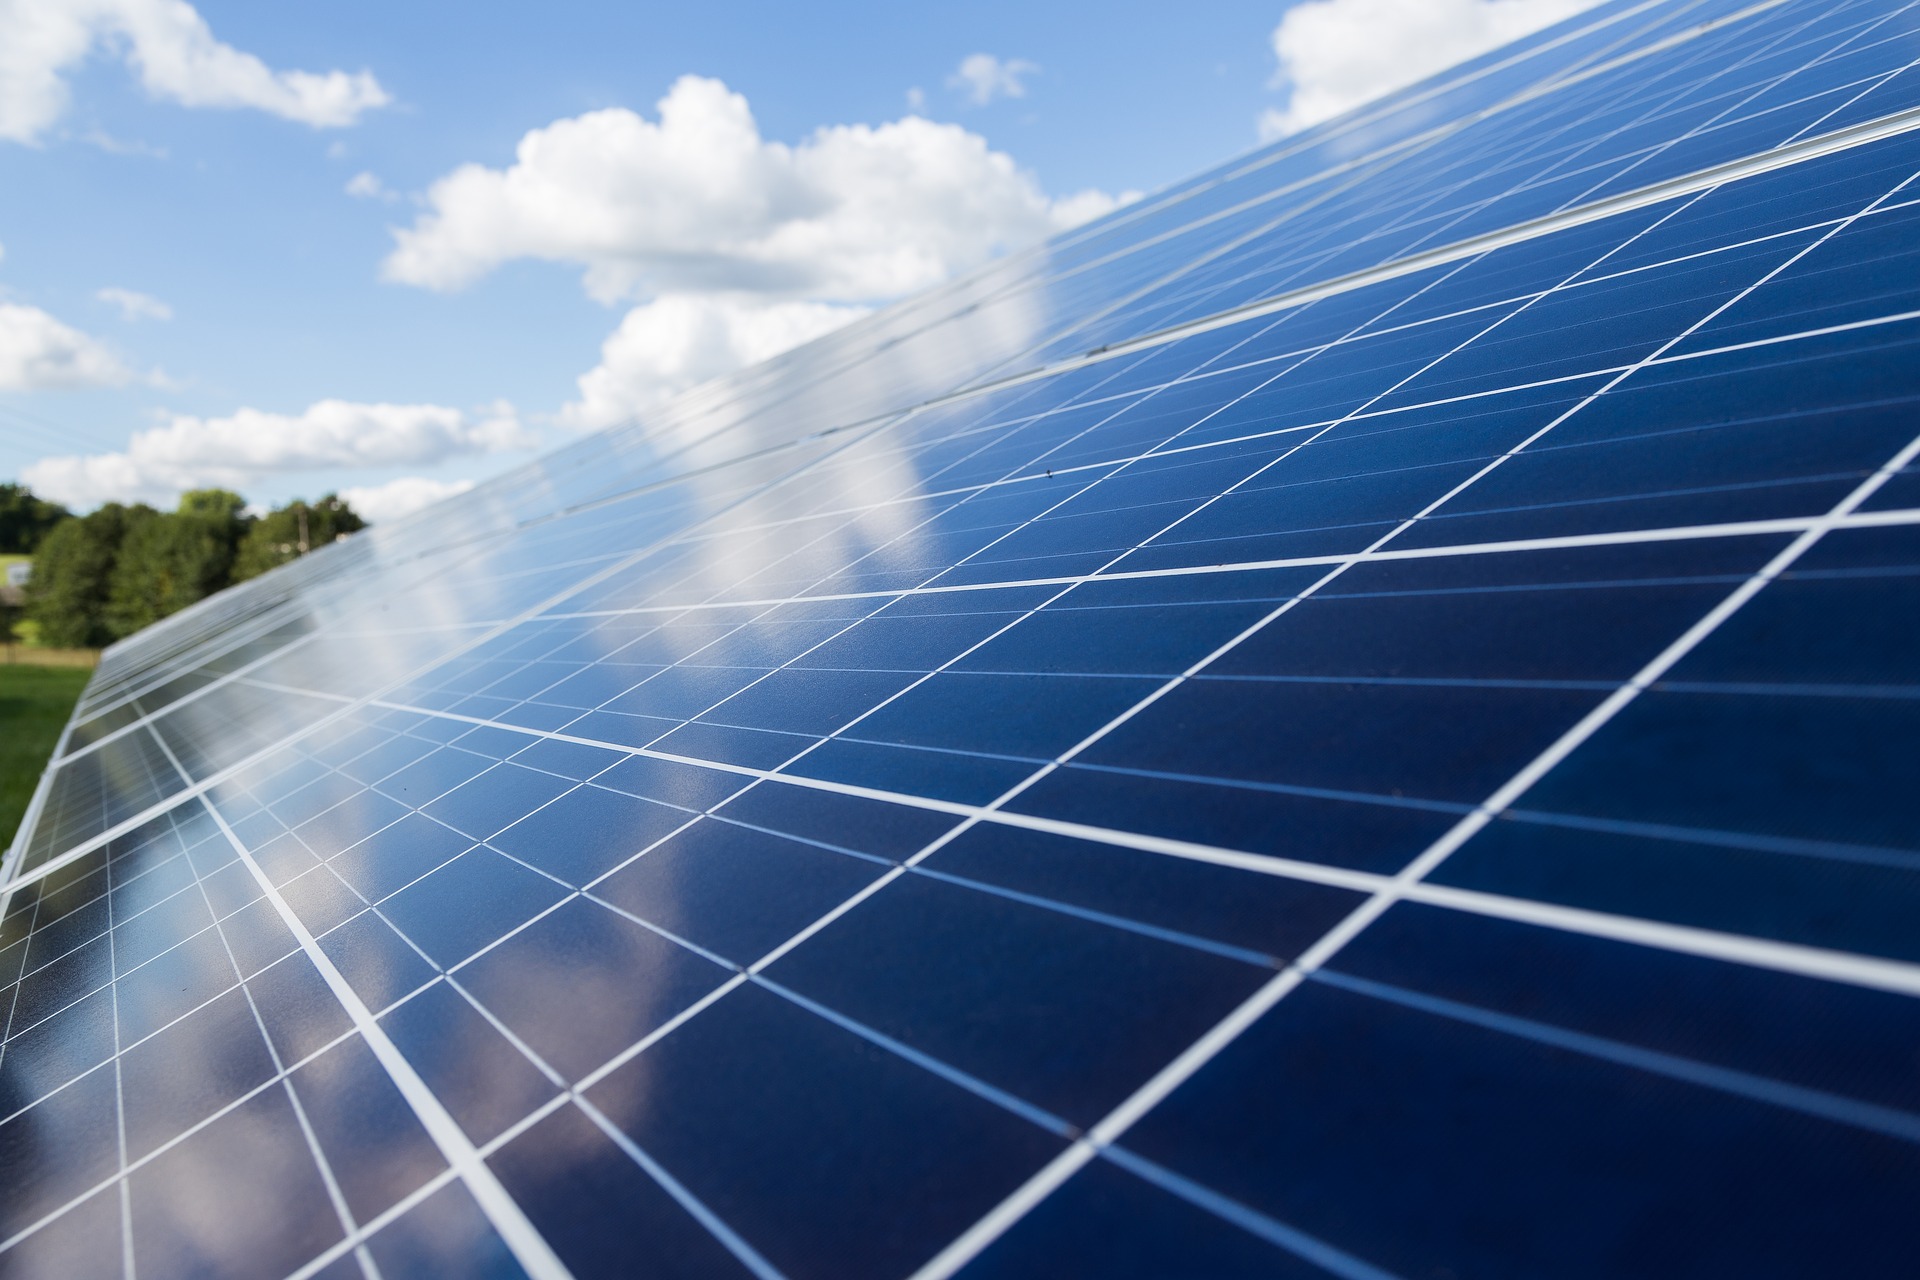 بحث فرص الاستثمار لتوليد الطاقة الشمسية ضمن القمة العالمية لطاقة المستقبل بأبوظبي Abu Dhabi يناير العام المقبل